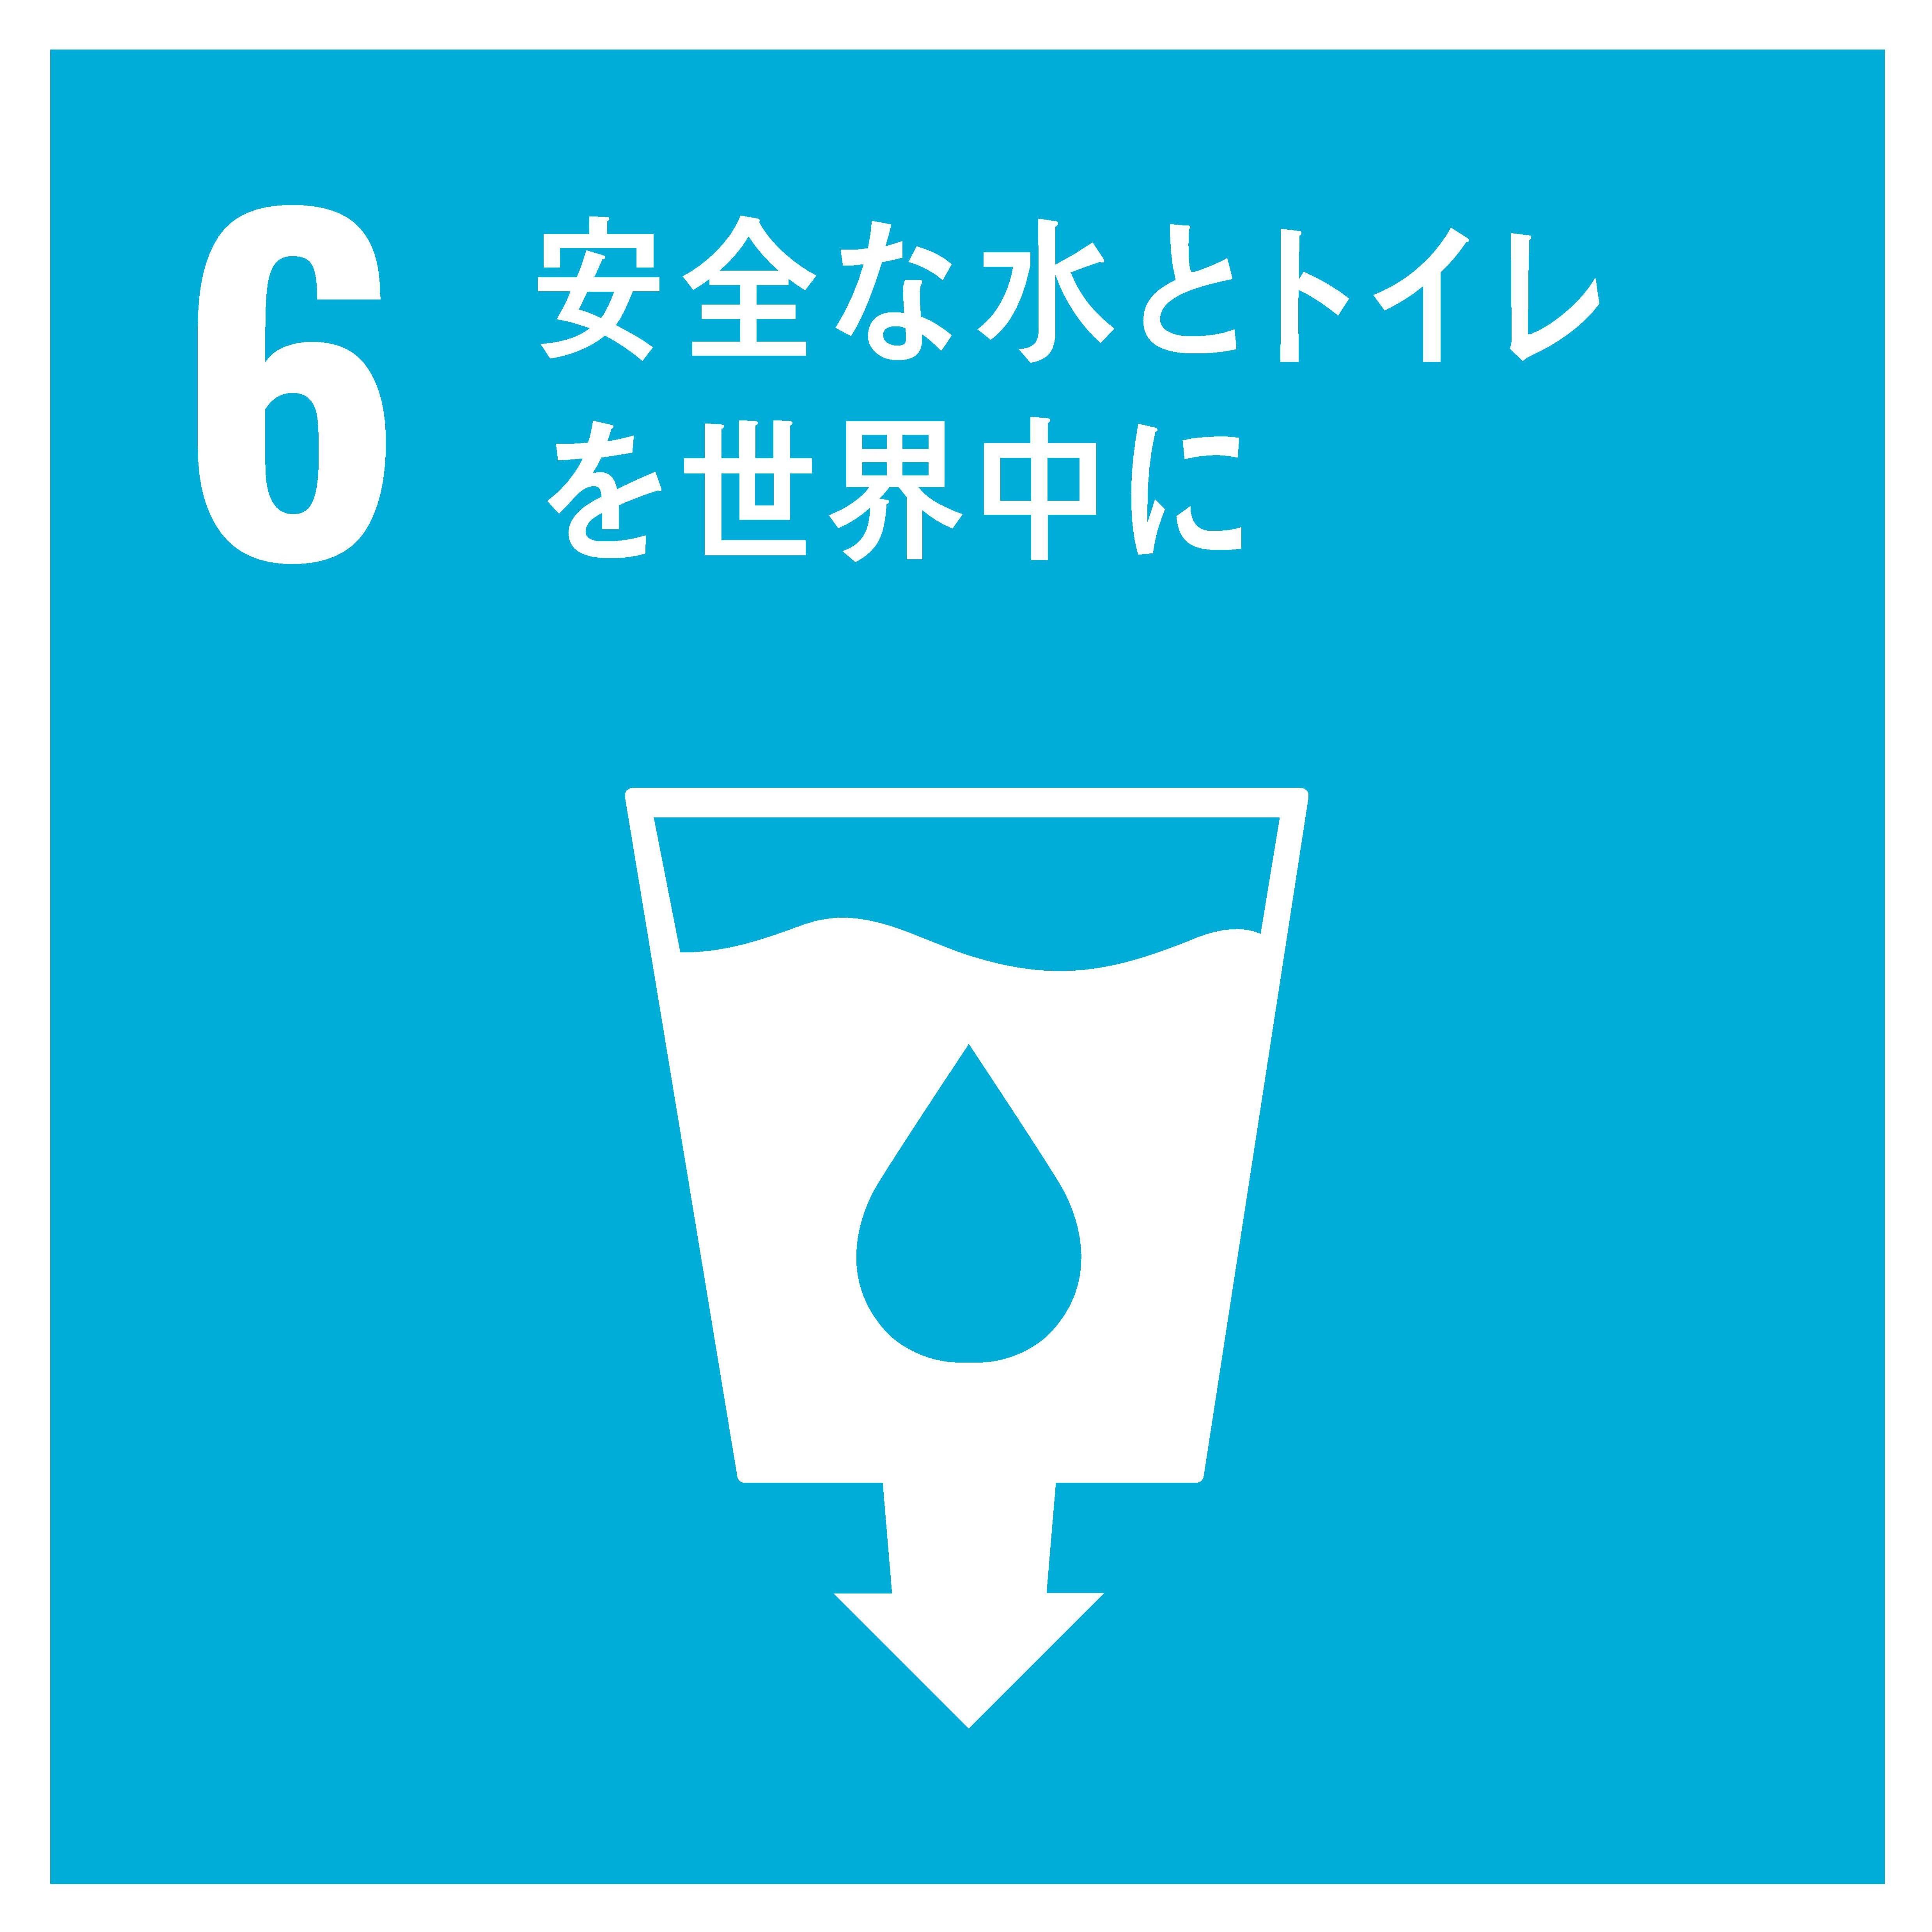 6安全な水とトイレを世界中に.jpg